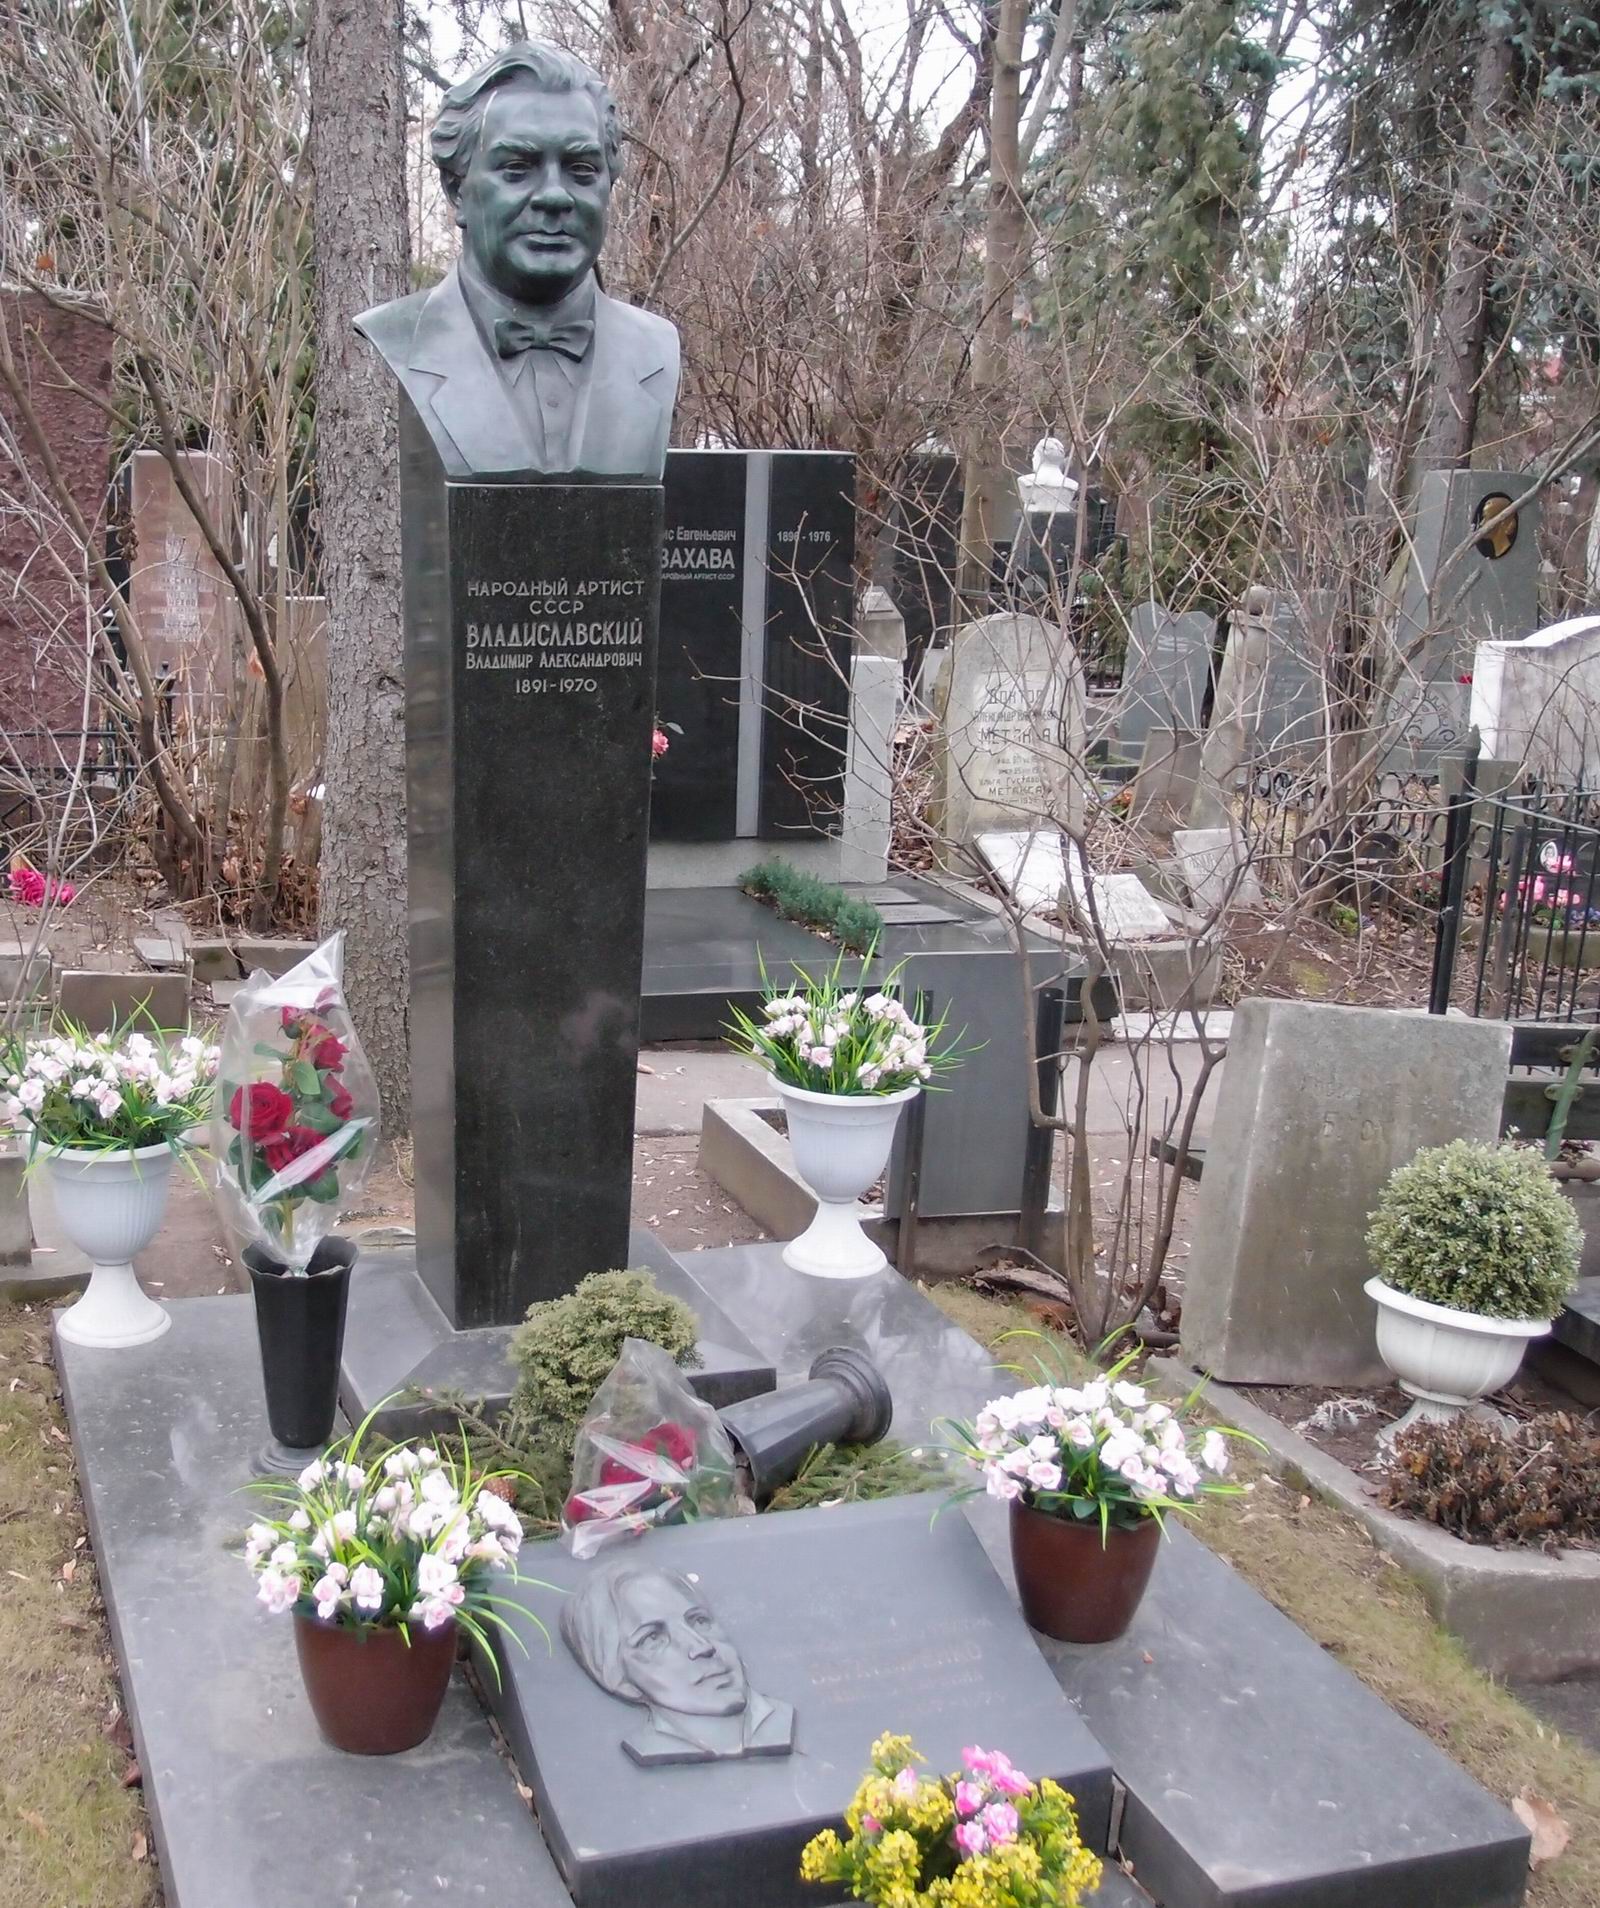 Памятник на могиле Владиславского В.А. (1891-1970), ск. В.Никифоров, арх. Э.Климов, на Новодевичьем кладбище (2-7-5).